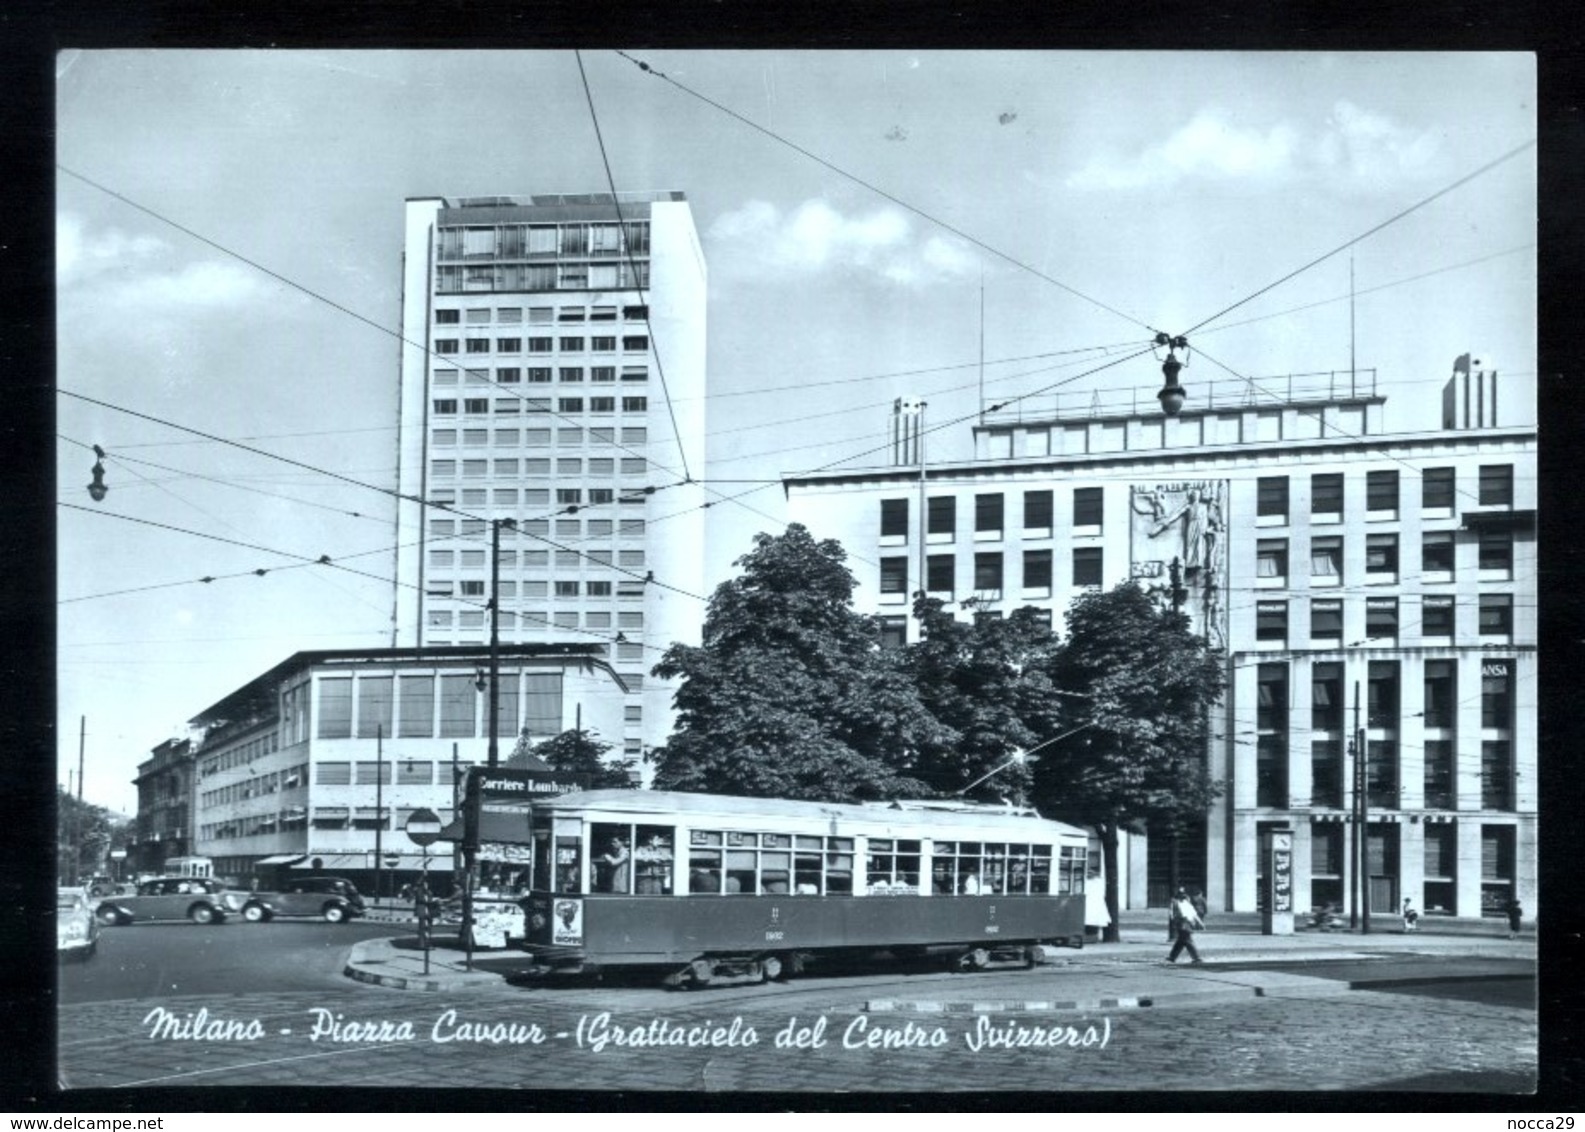 MILANO - 1952 - PIAZZA CAVOUR CON TRAM - GRATTACIELO DEL CENTRO SVIZZERO - Milano